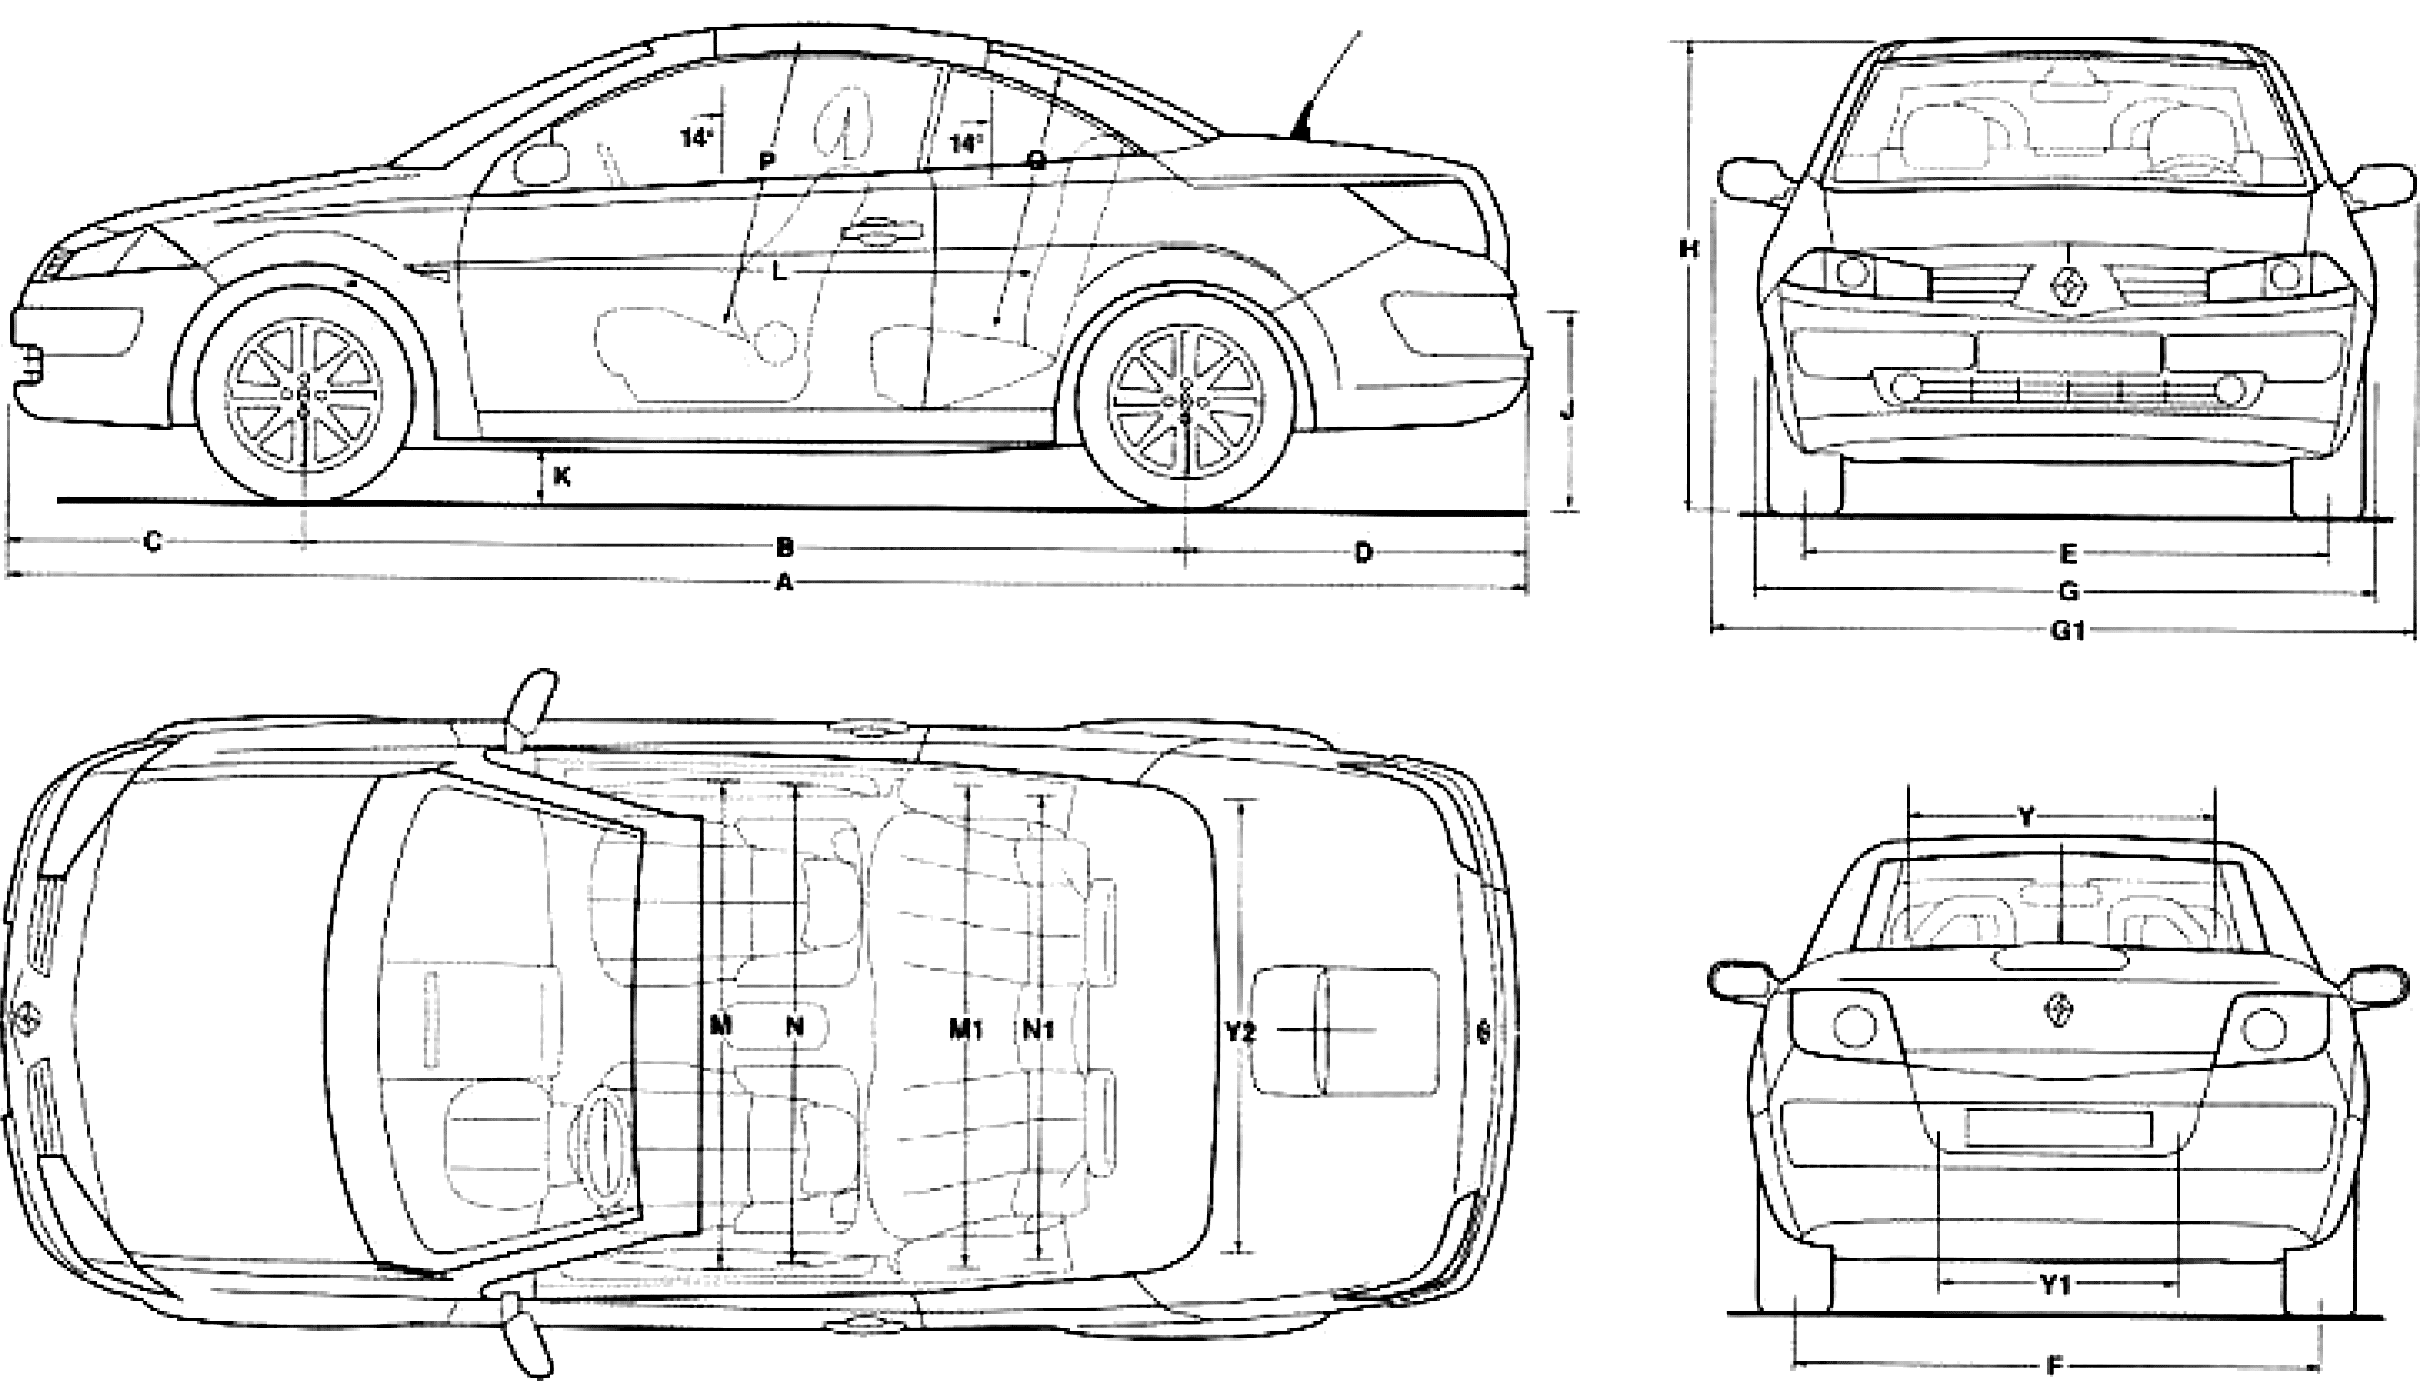 2007-renault-megane-cc-coupe-blueprints-free-outlines